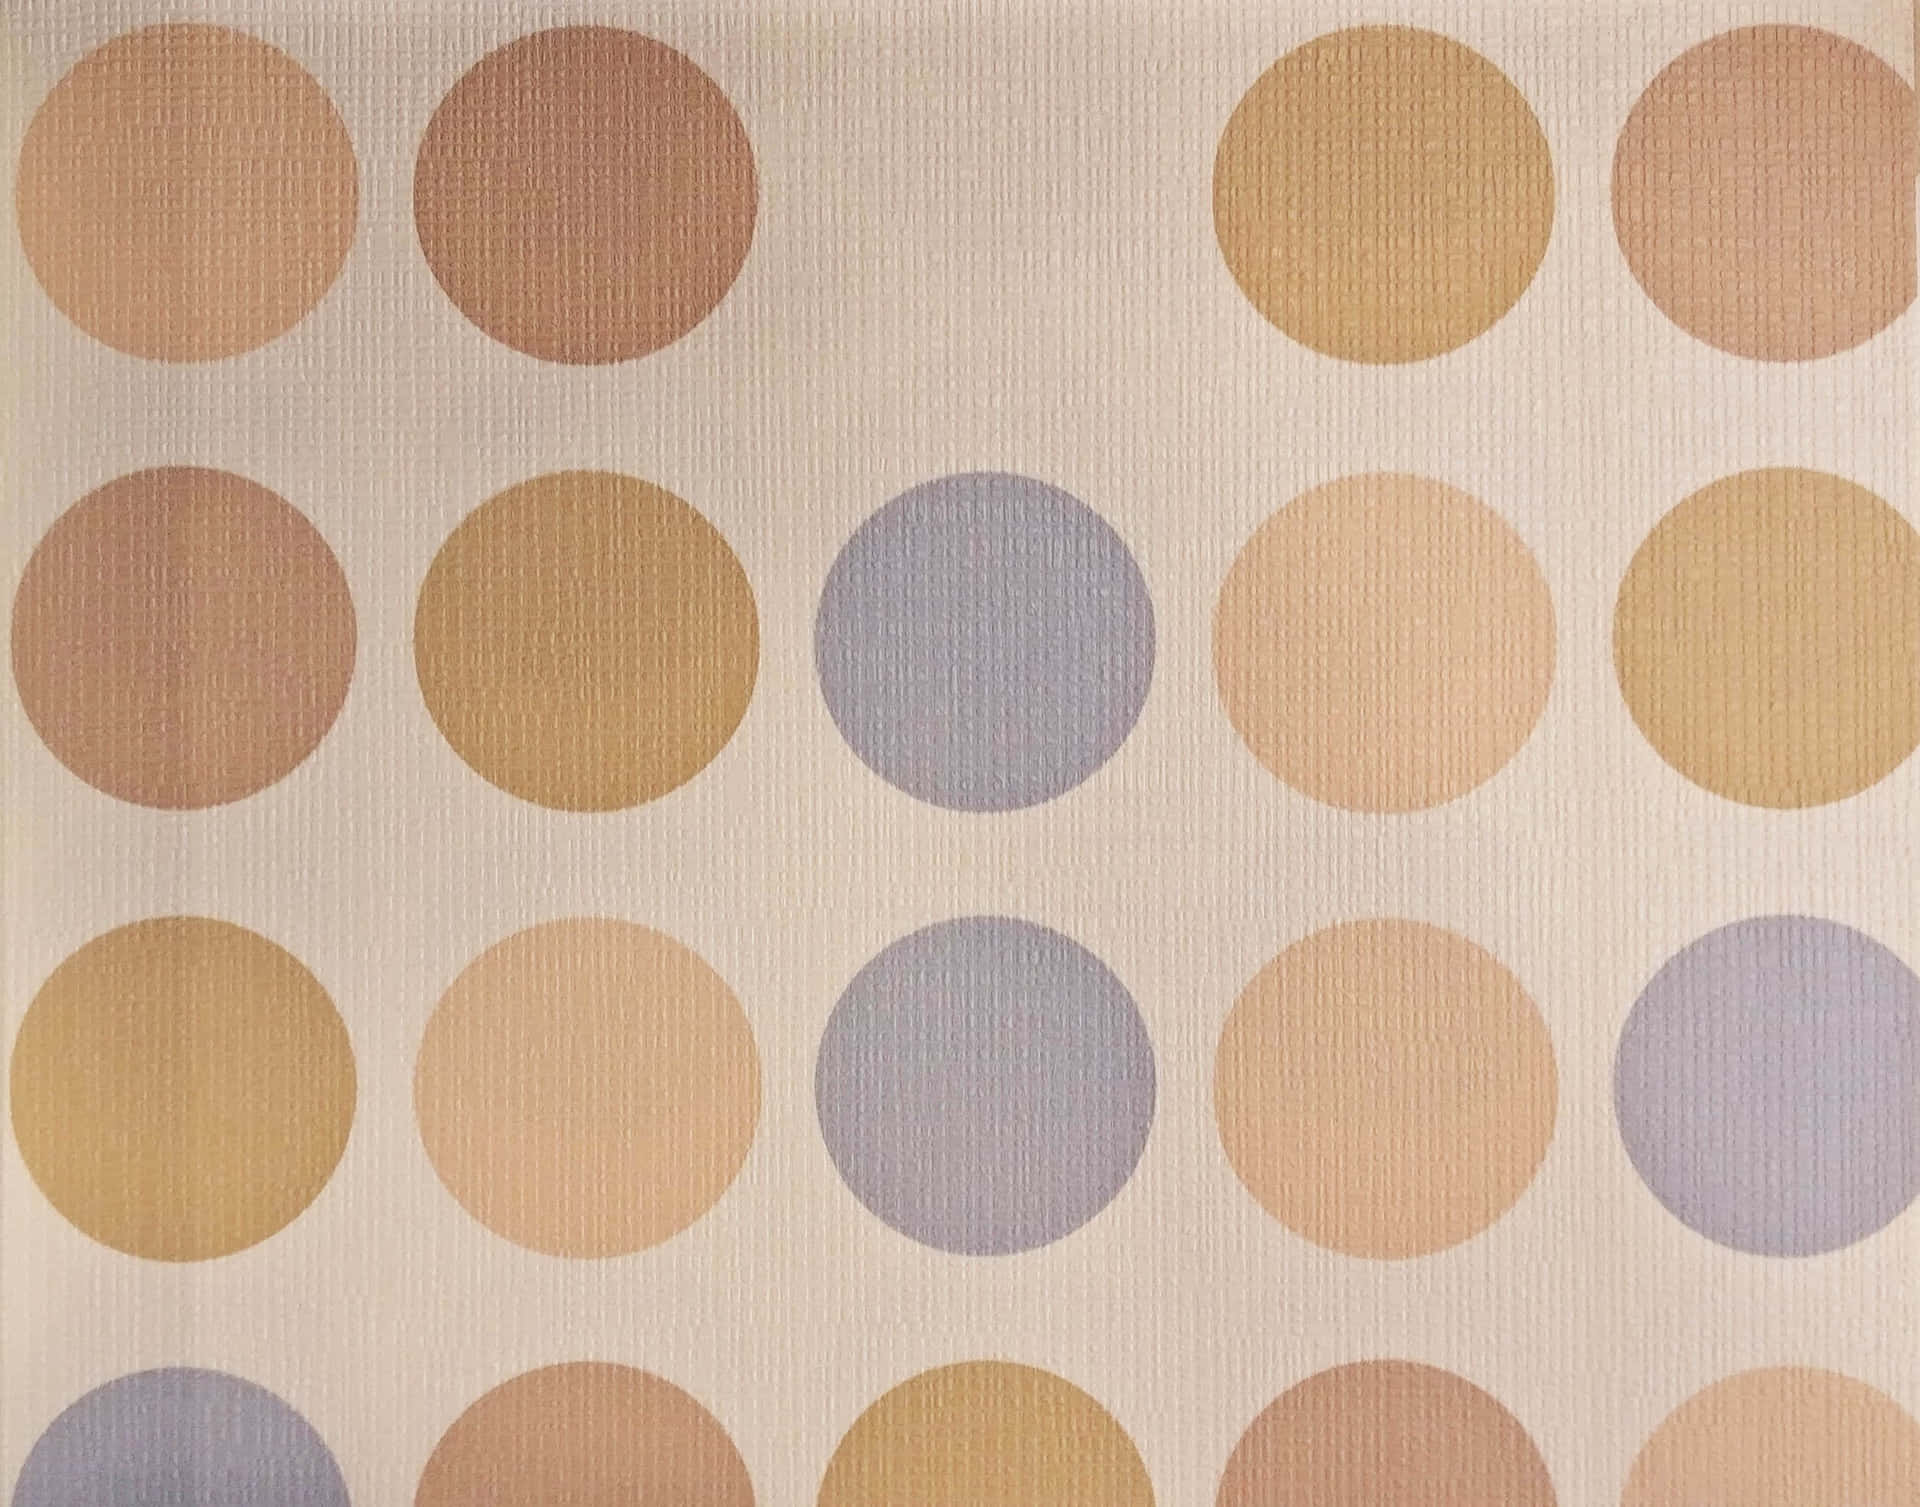 Unfondo De Pantalla Con Un Patrón De Círculos En Diferentes Colores. Fondo de pantalla